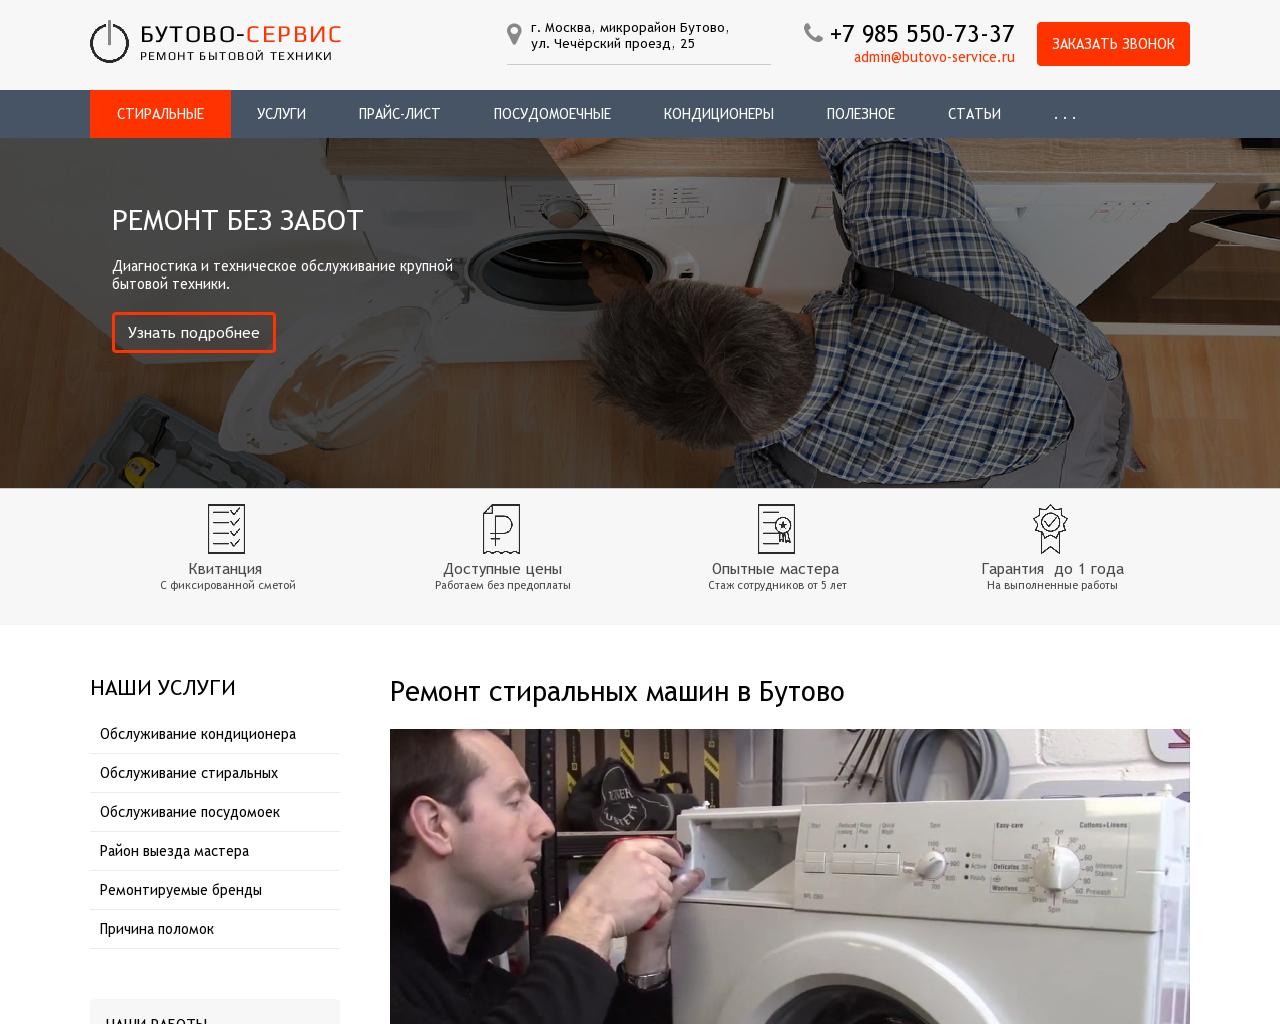 Изображение сайта butovo-service.ru в разрешении 1280x1024